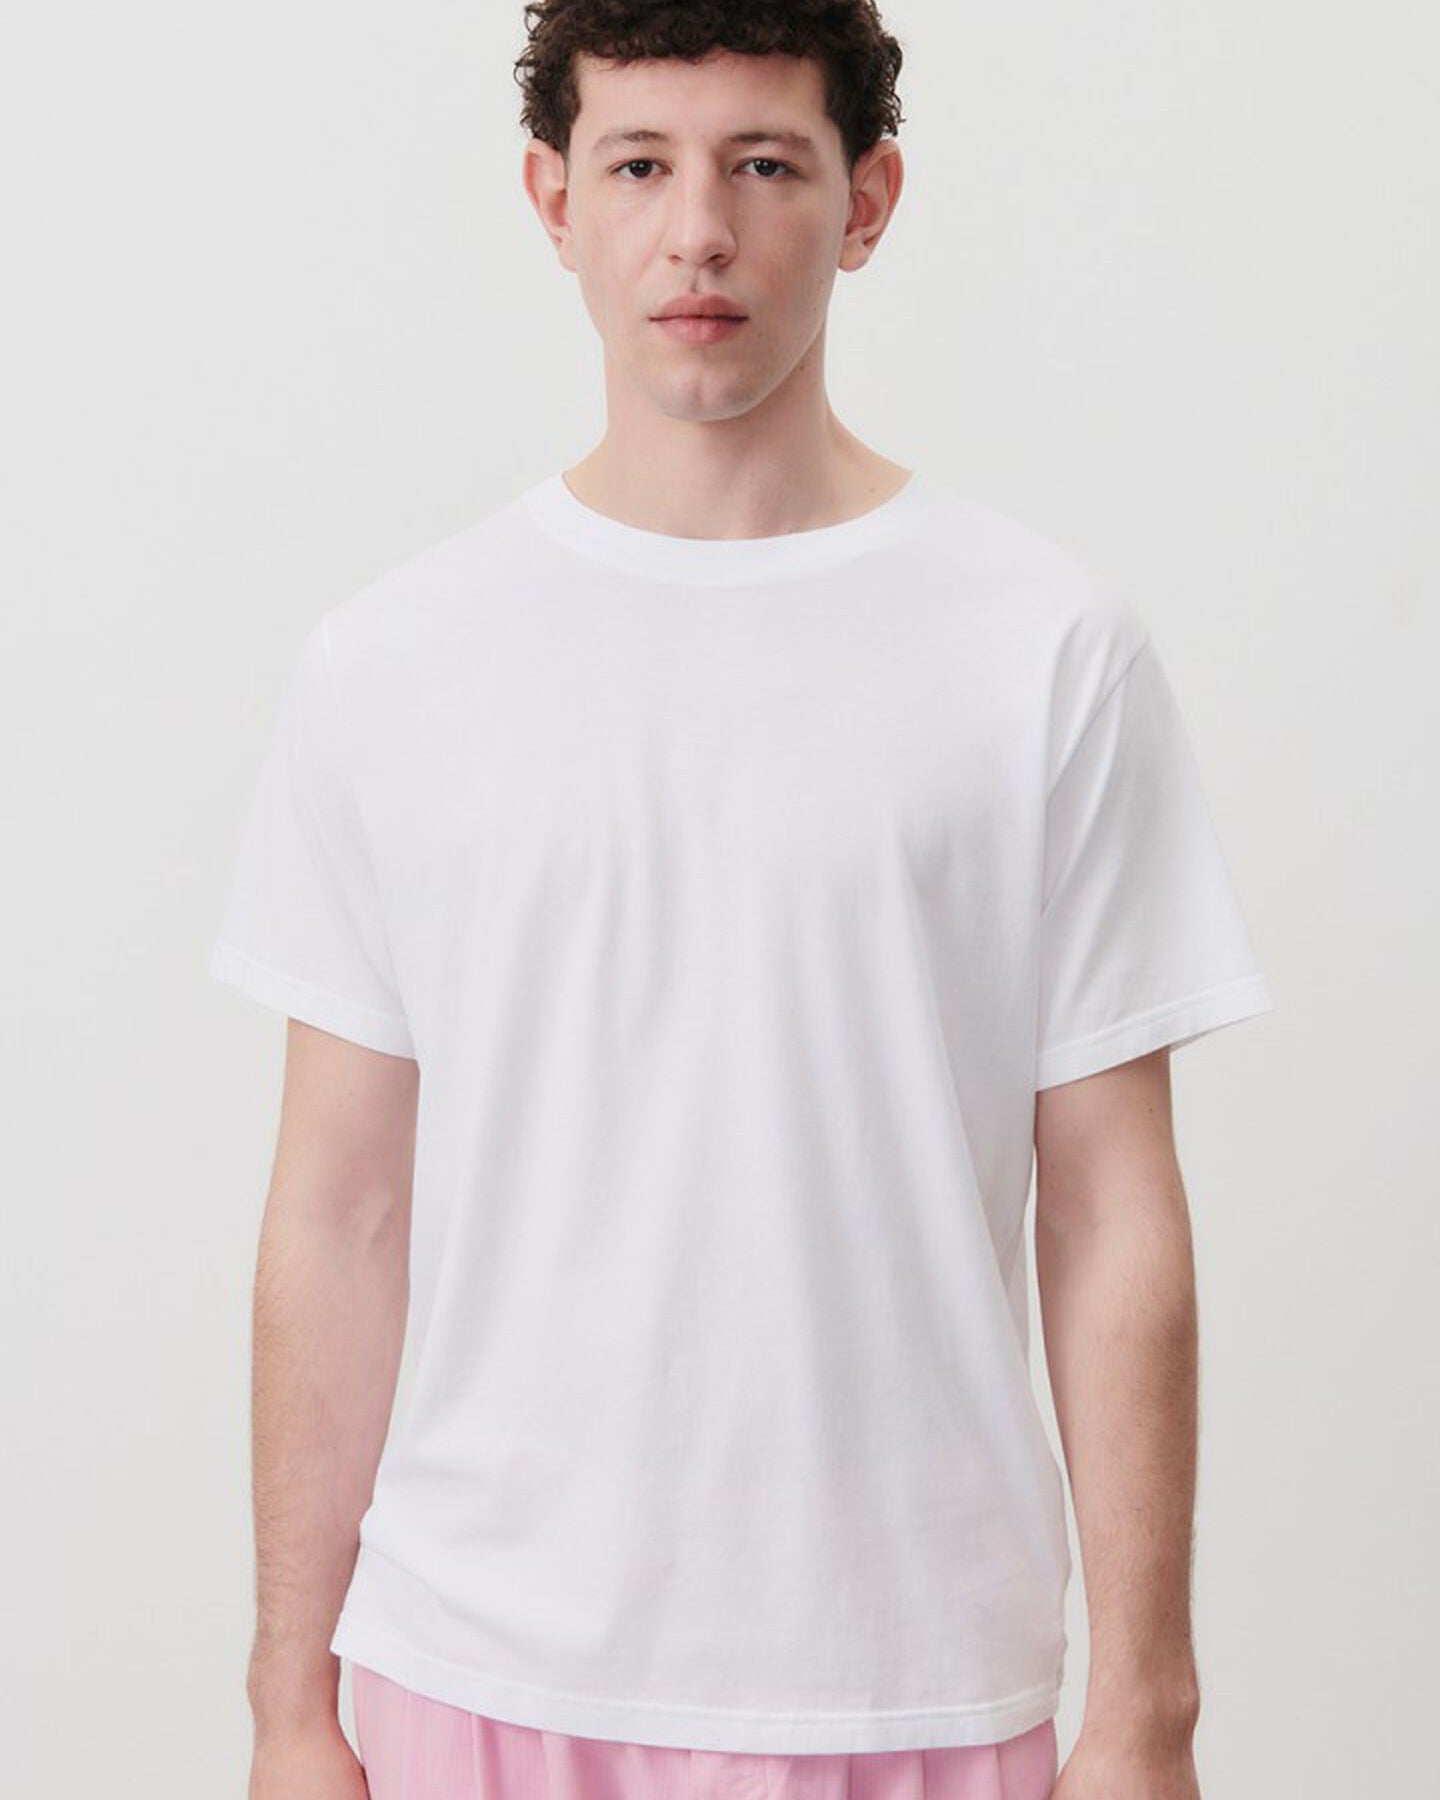 Vupaville t-shirt - Blanc